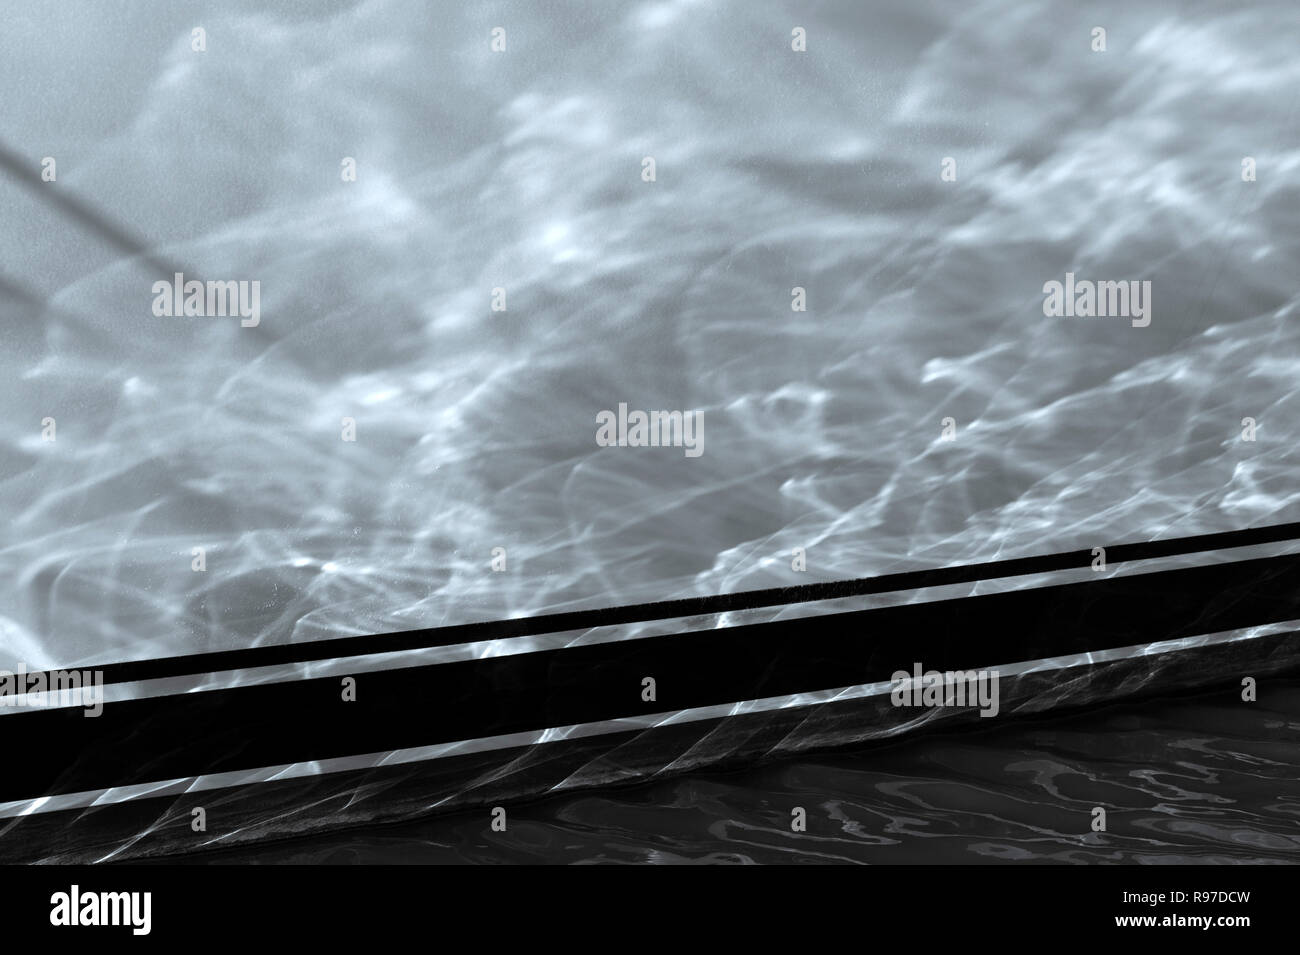 Bellingham Bay Marina avec des yachts amarrés aux réflexions abstraites dans l'eau Banque D'Images